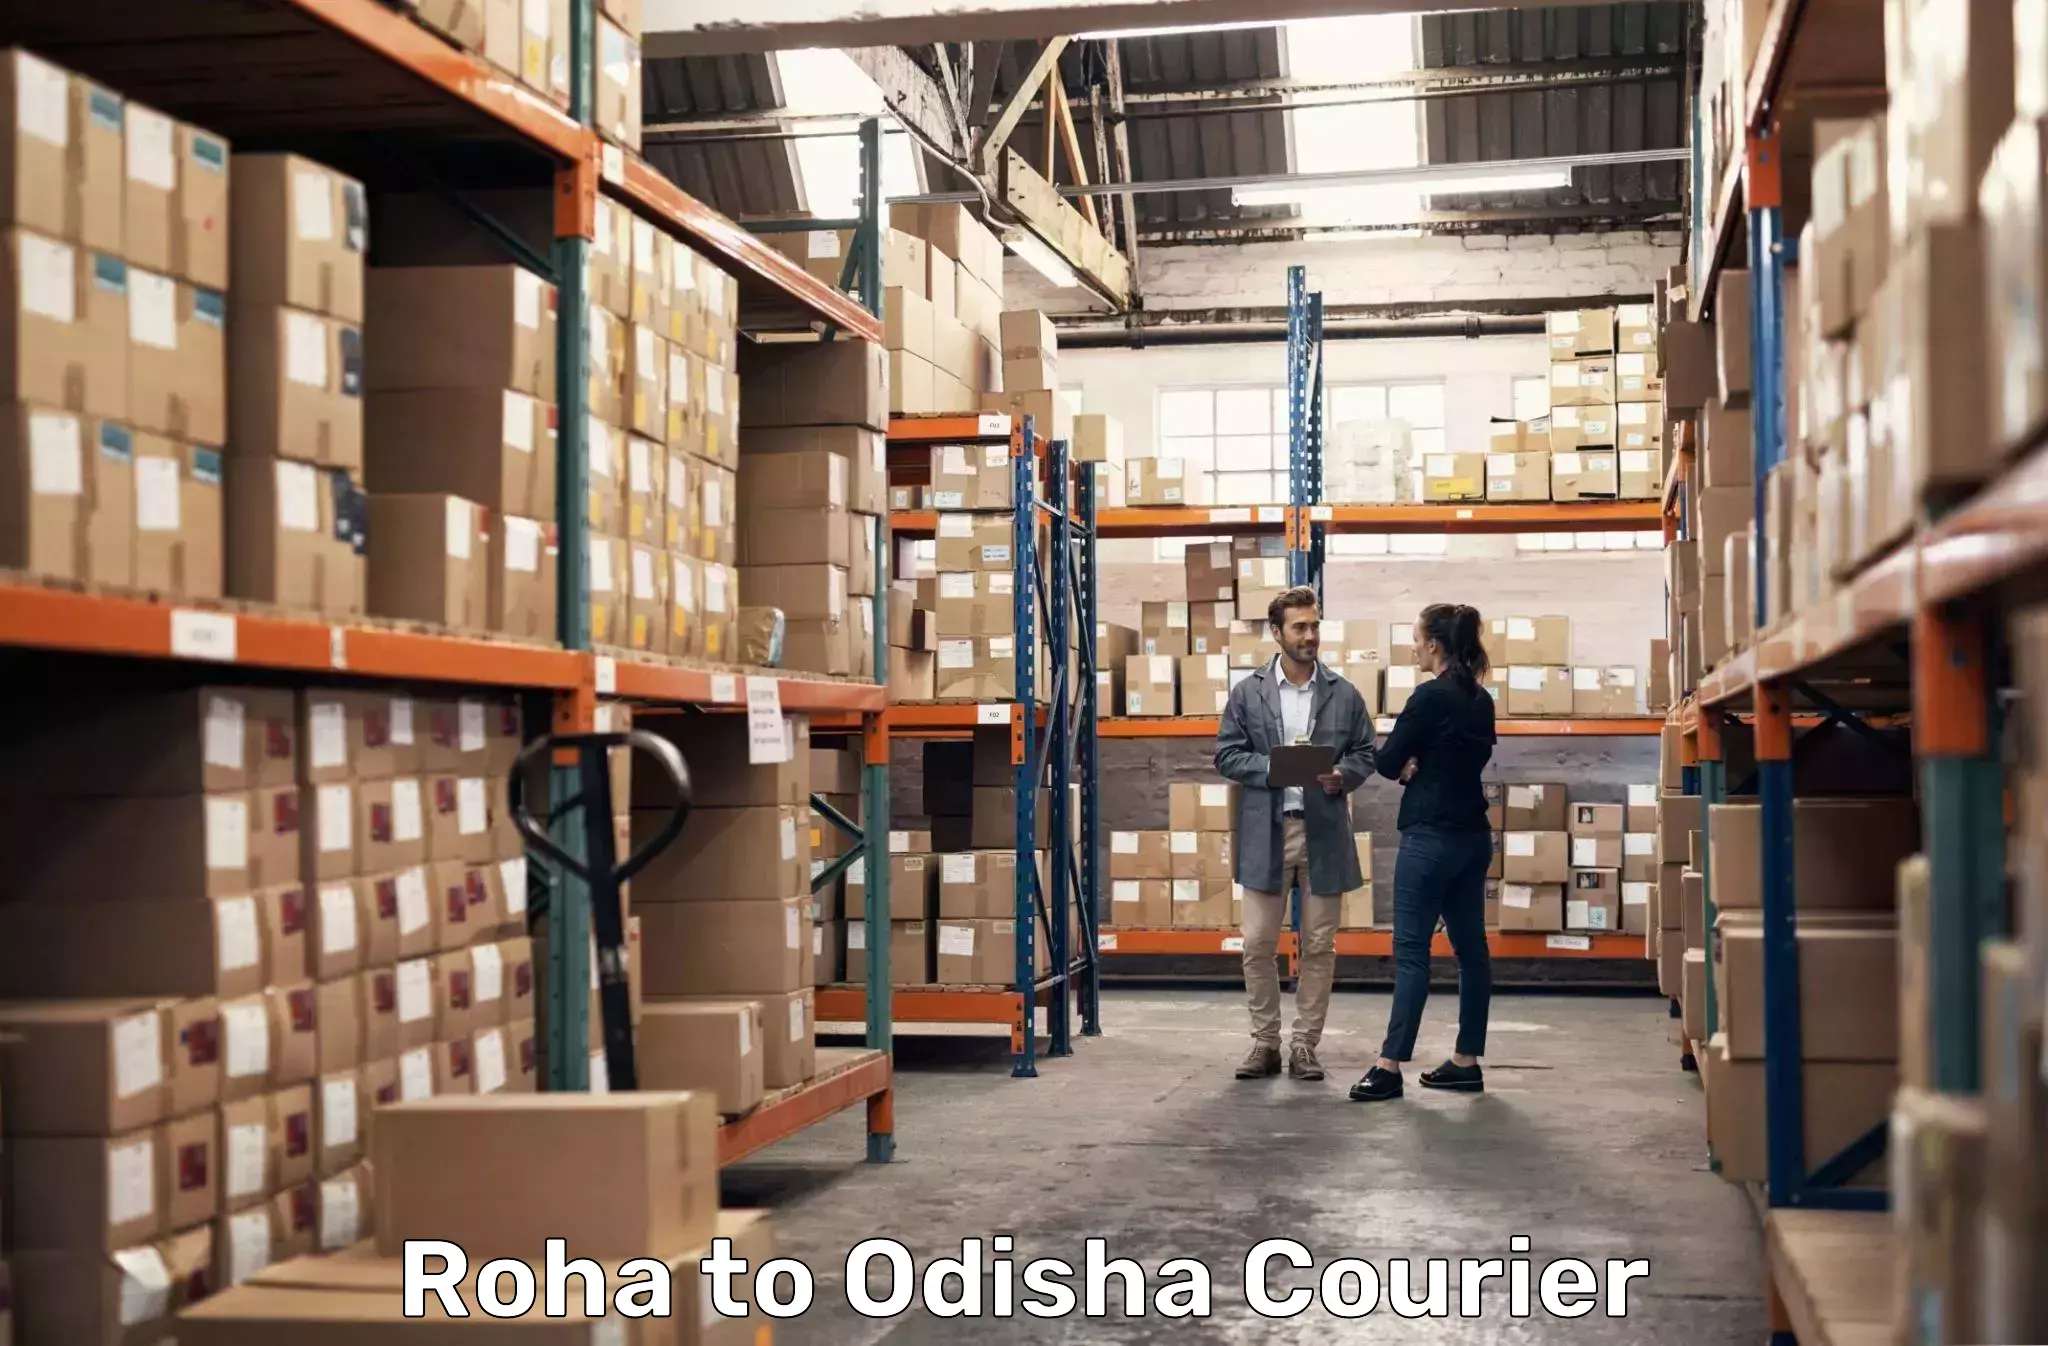 On-call courier service in Roha to Mahakalapada